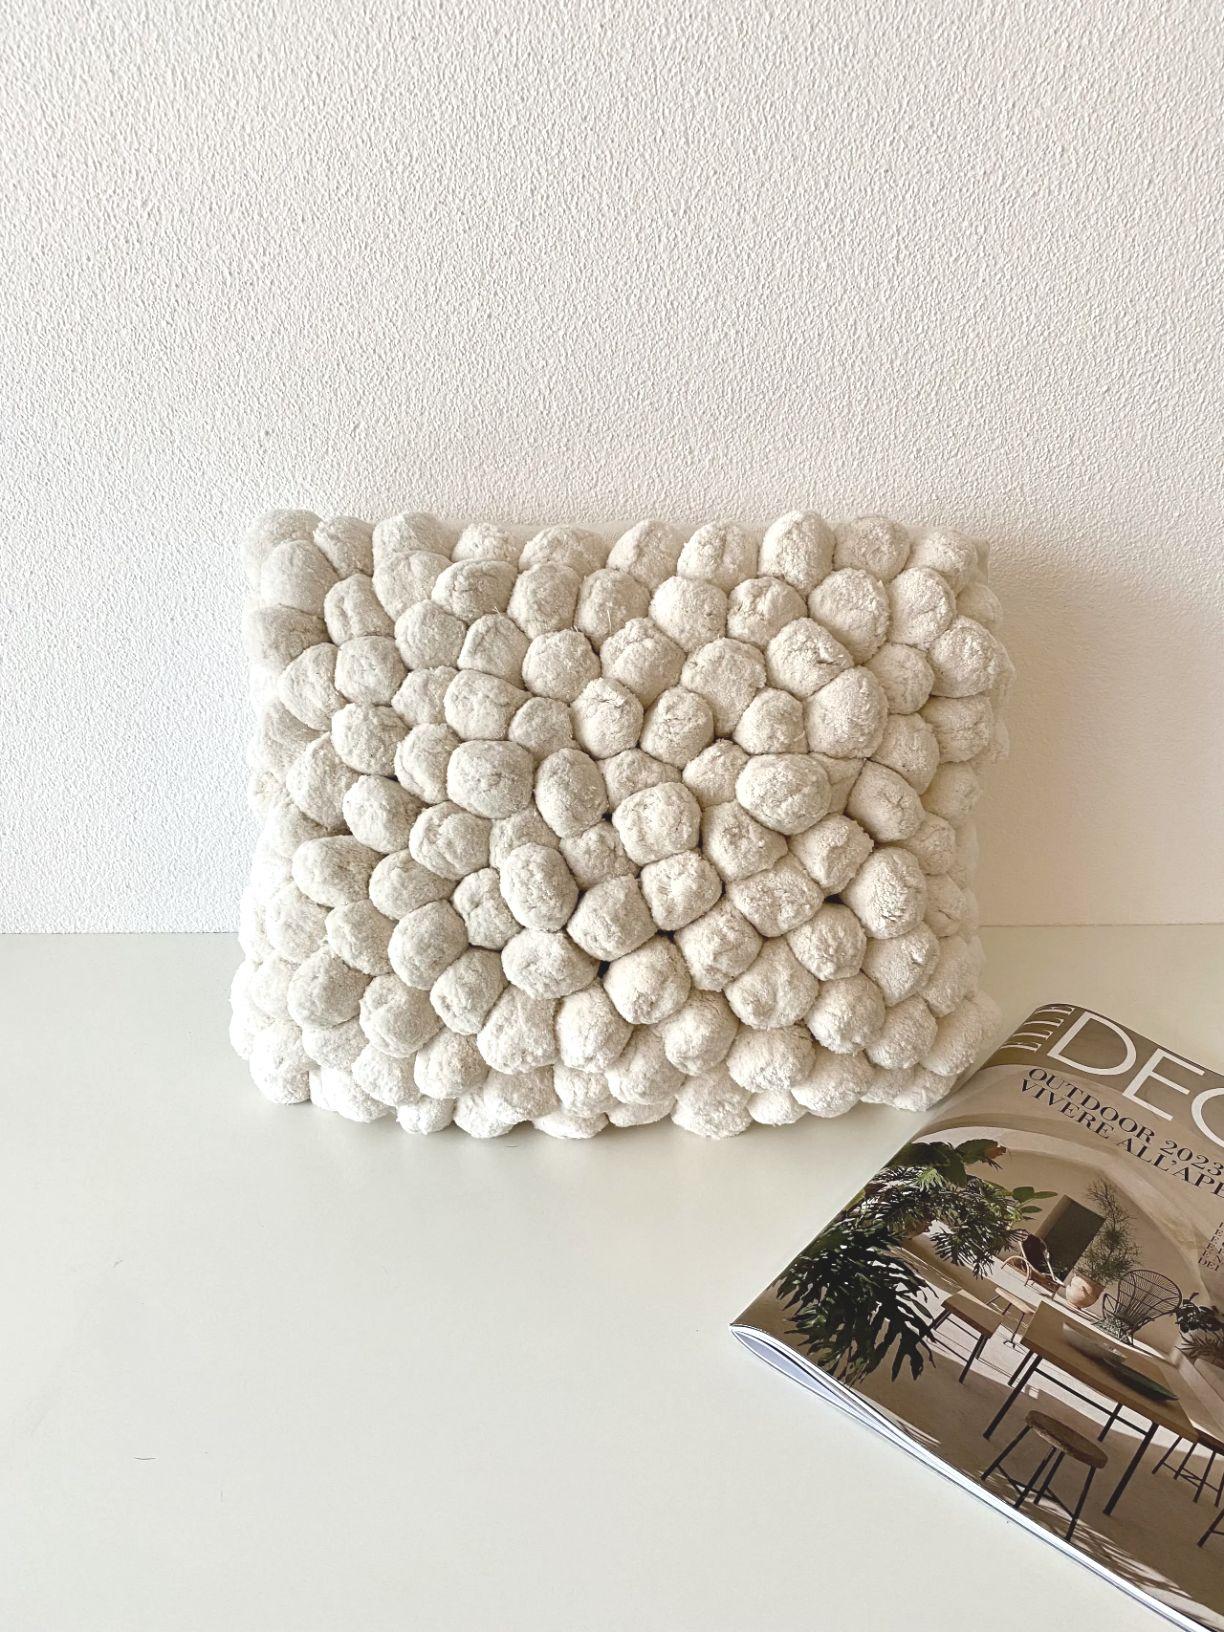 Cozy Pillow, Cuscino Bianco | Serie n°1/4